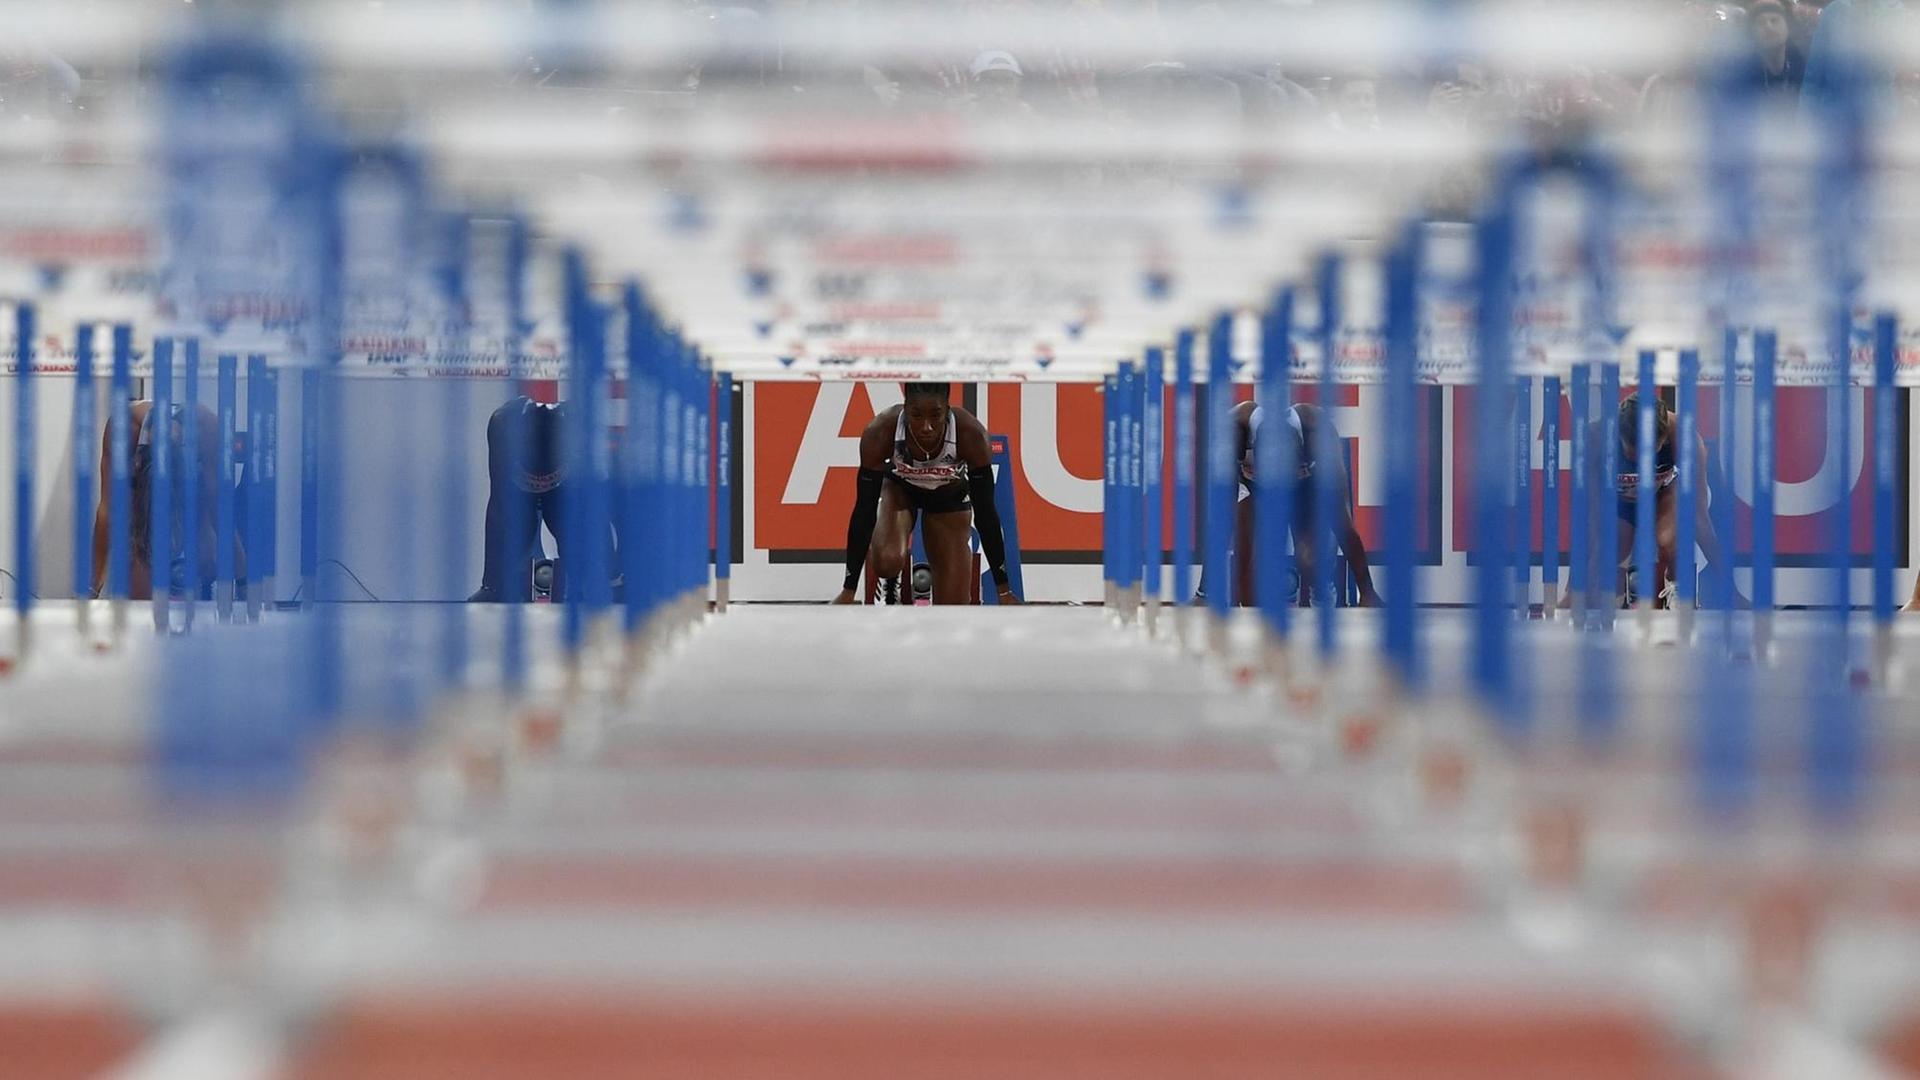 Hürdenläuferin vor dem Start bei einem Diamond-League-Meeting in der Leichtathletik